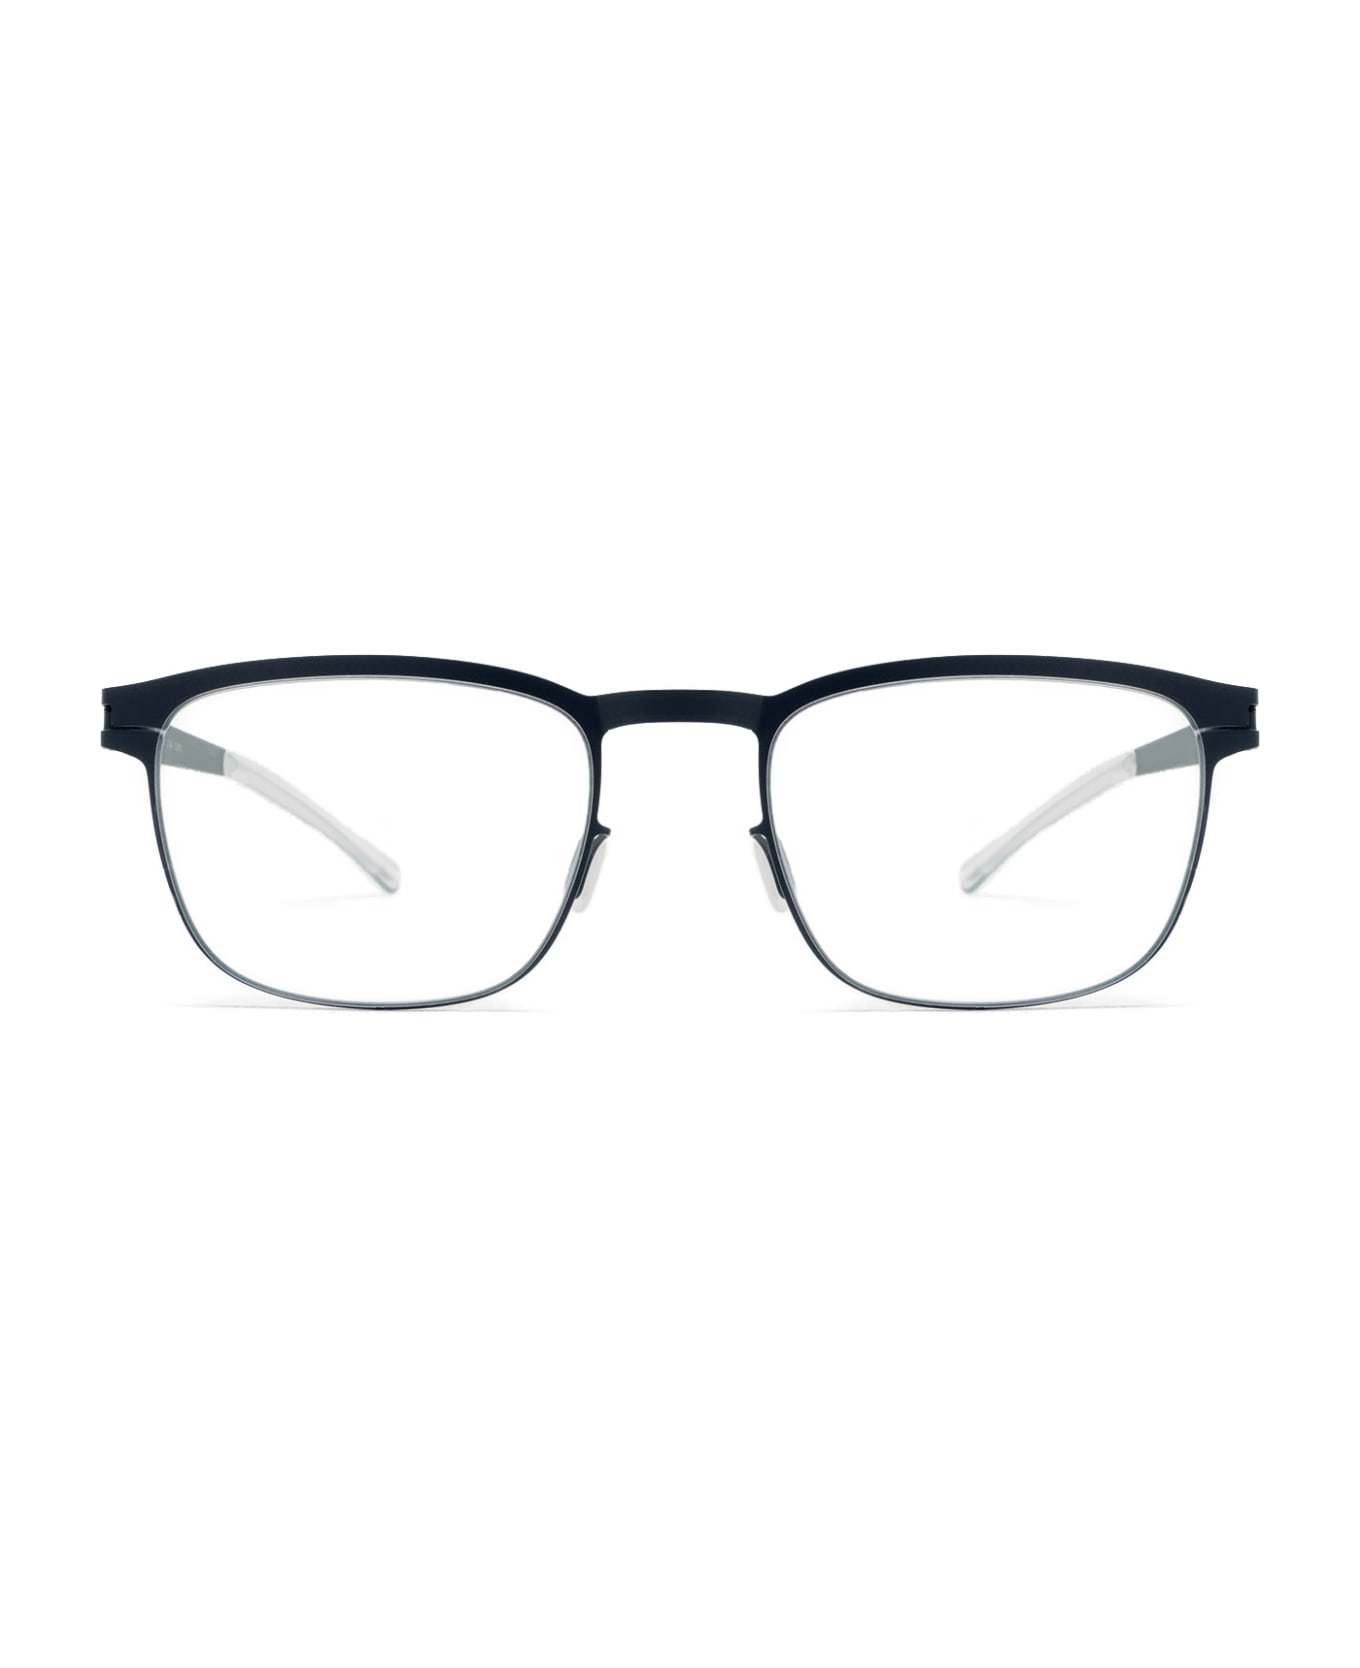 Mykita Theodore Navy Glasses - Navy